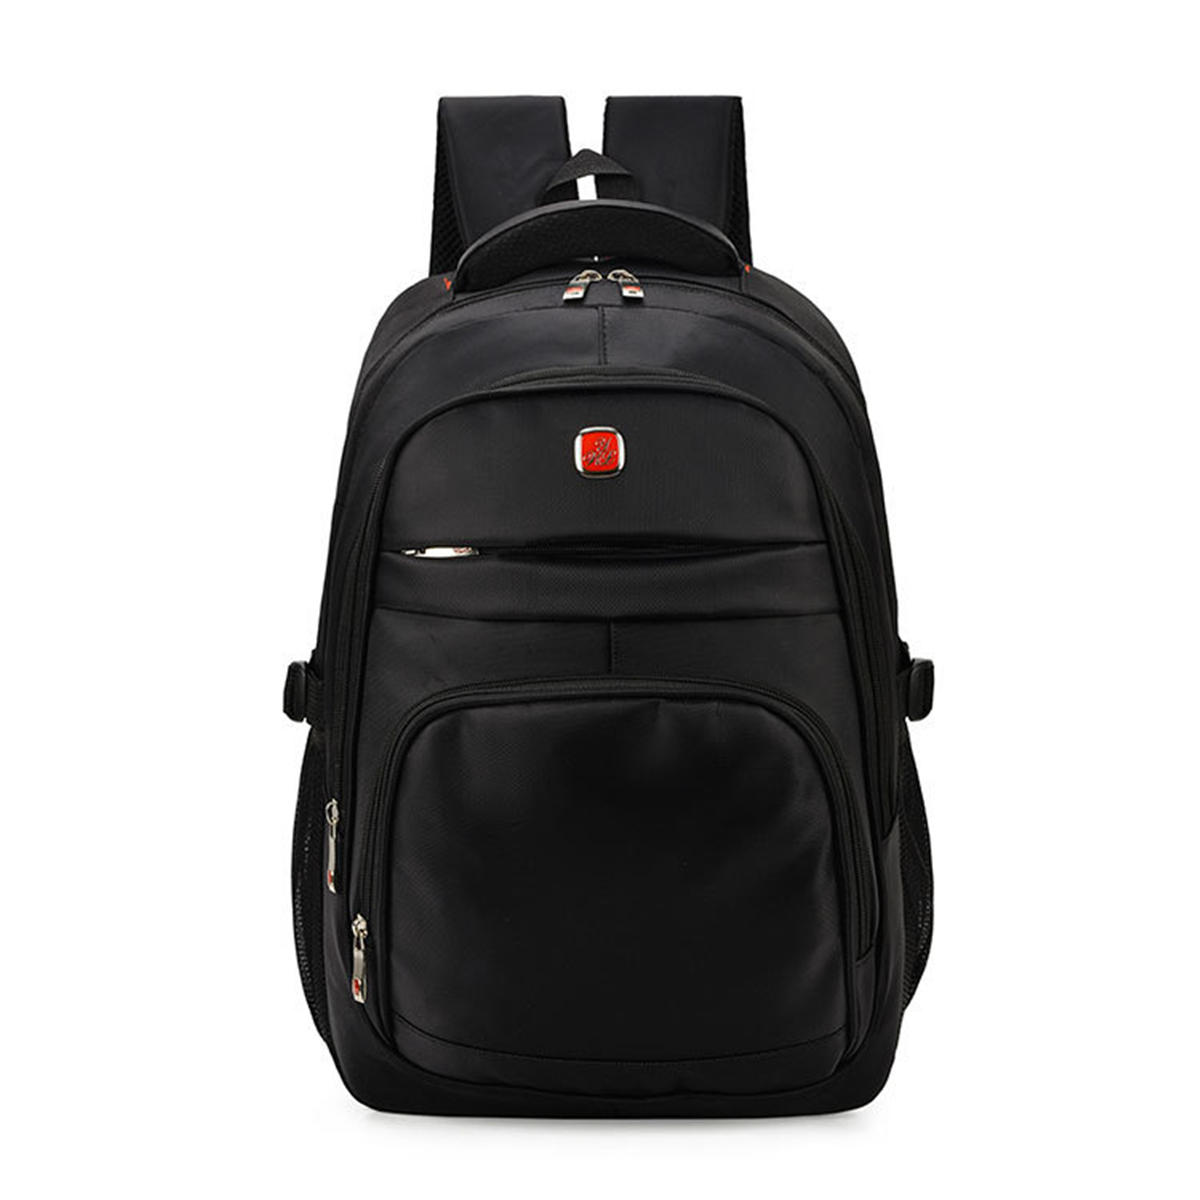 Outdoor Nylon Backpack 15inch Laptop Bag Camping Travel Handbag Mens Shoulder Bag